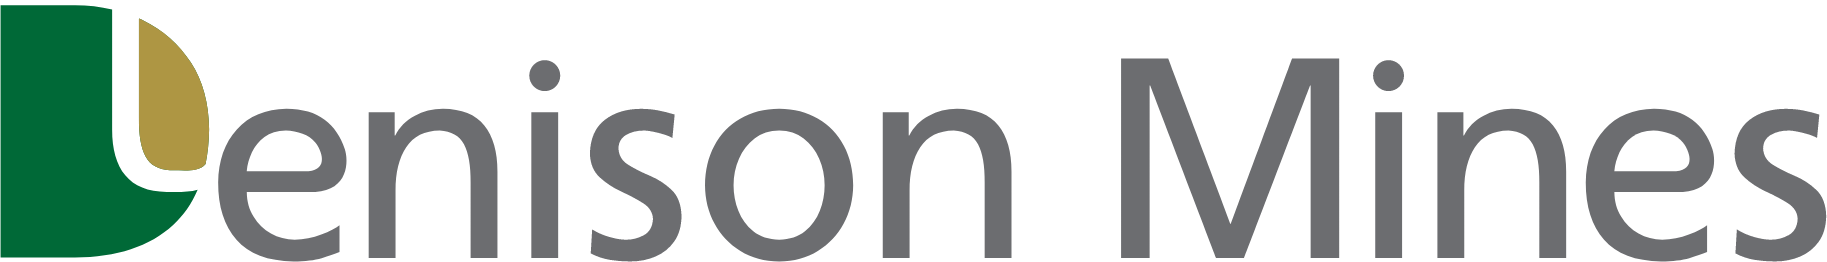 Denison Mines
 logo large (transparent PNG)